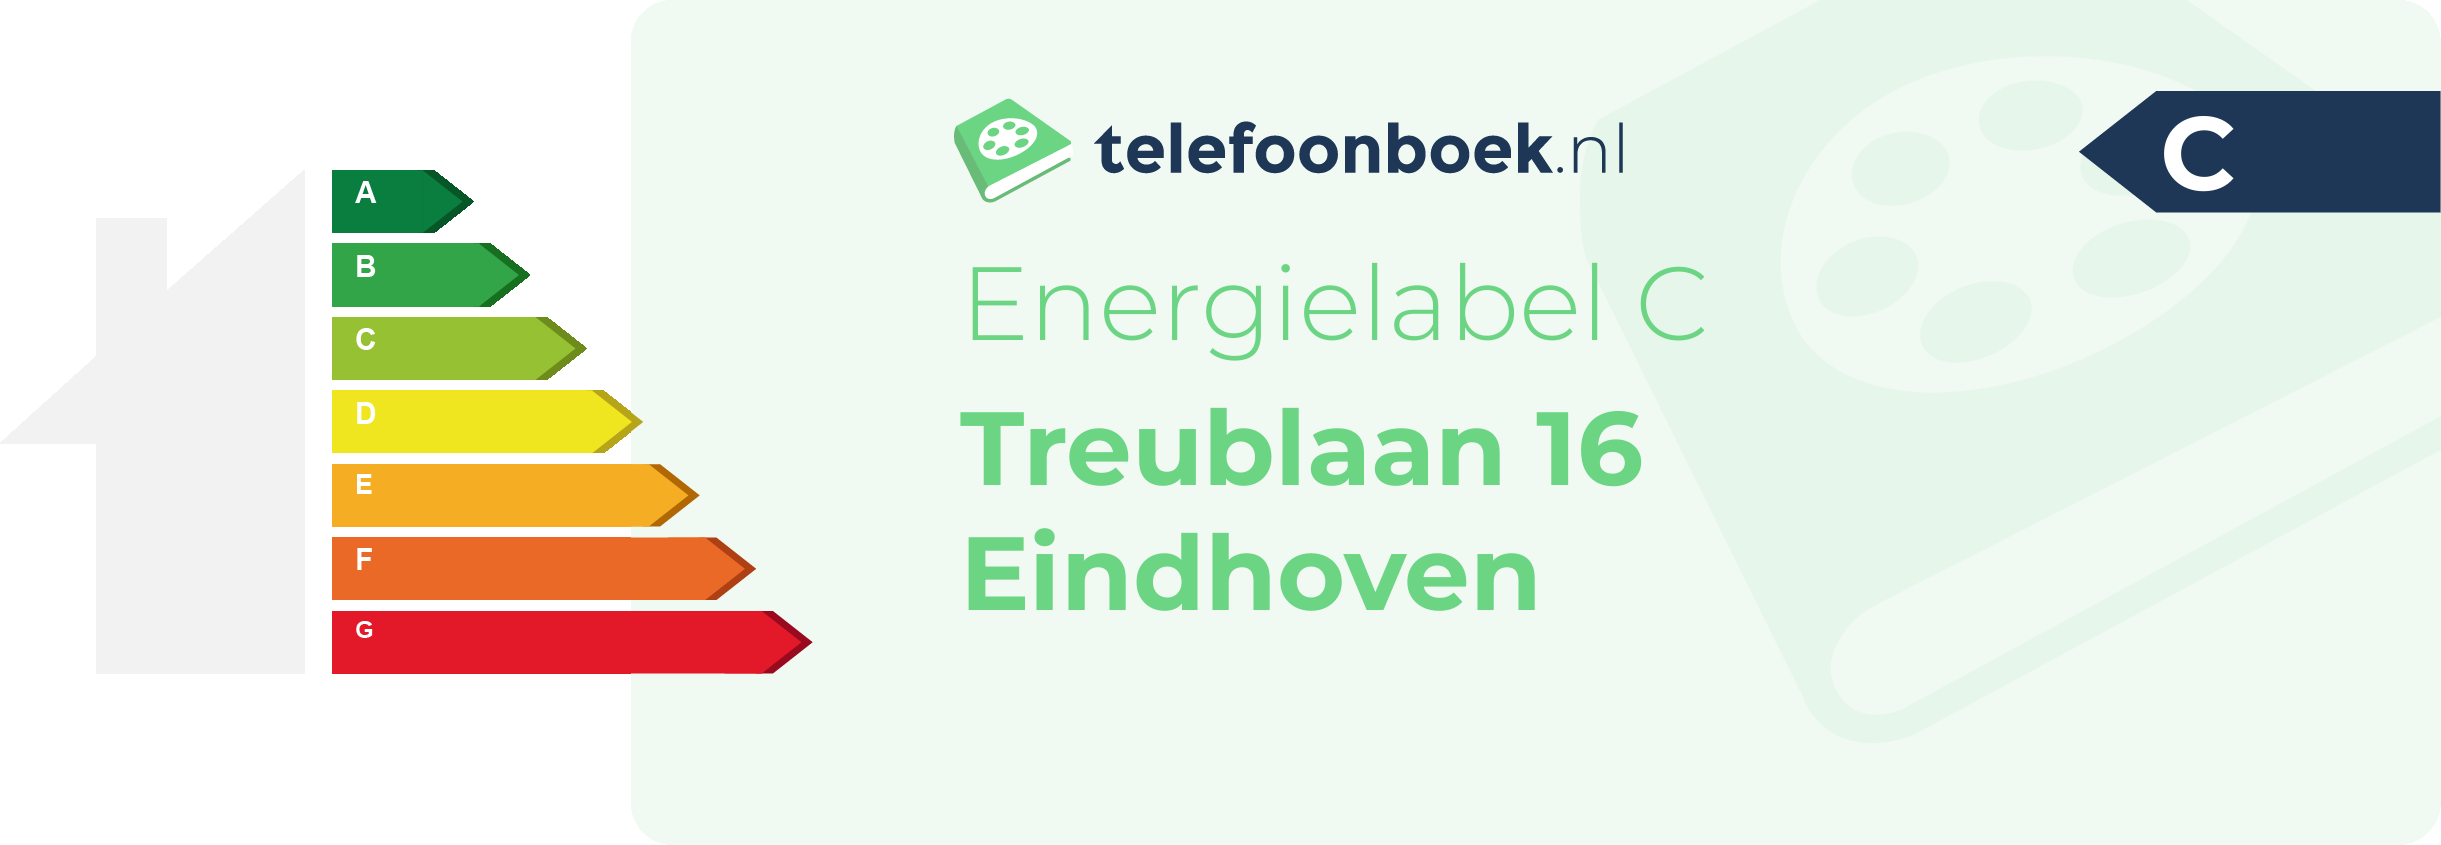 Energielabel Treublaan 16 Eindhoven